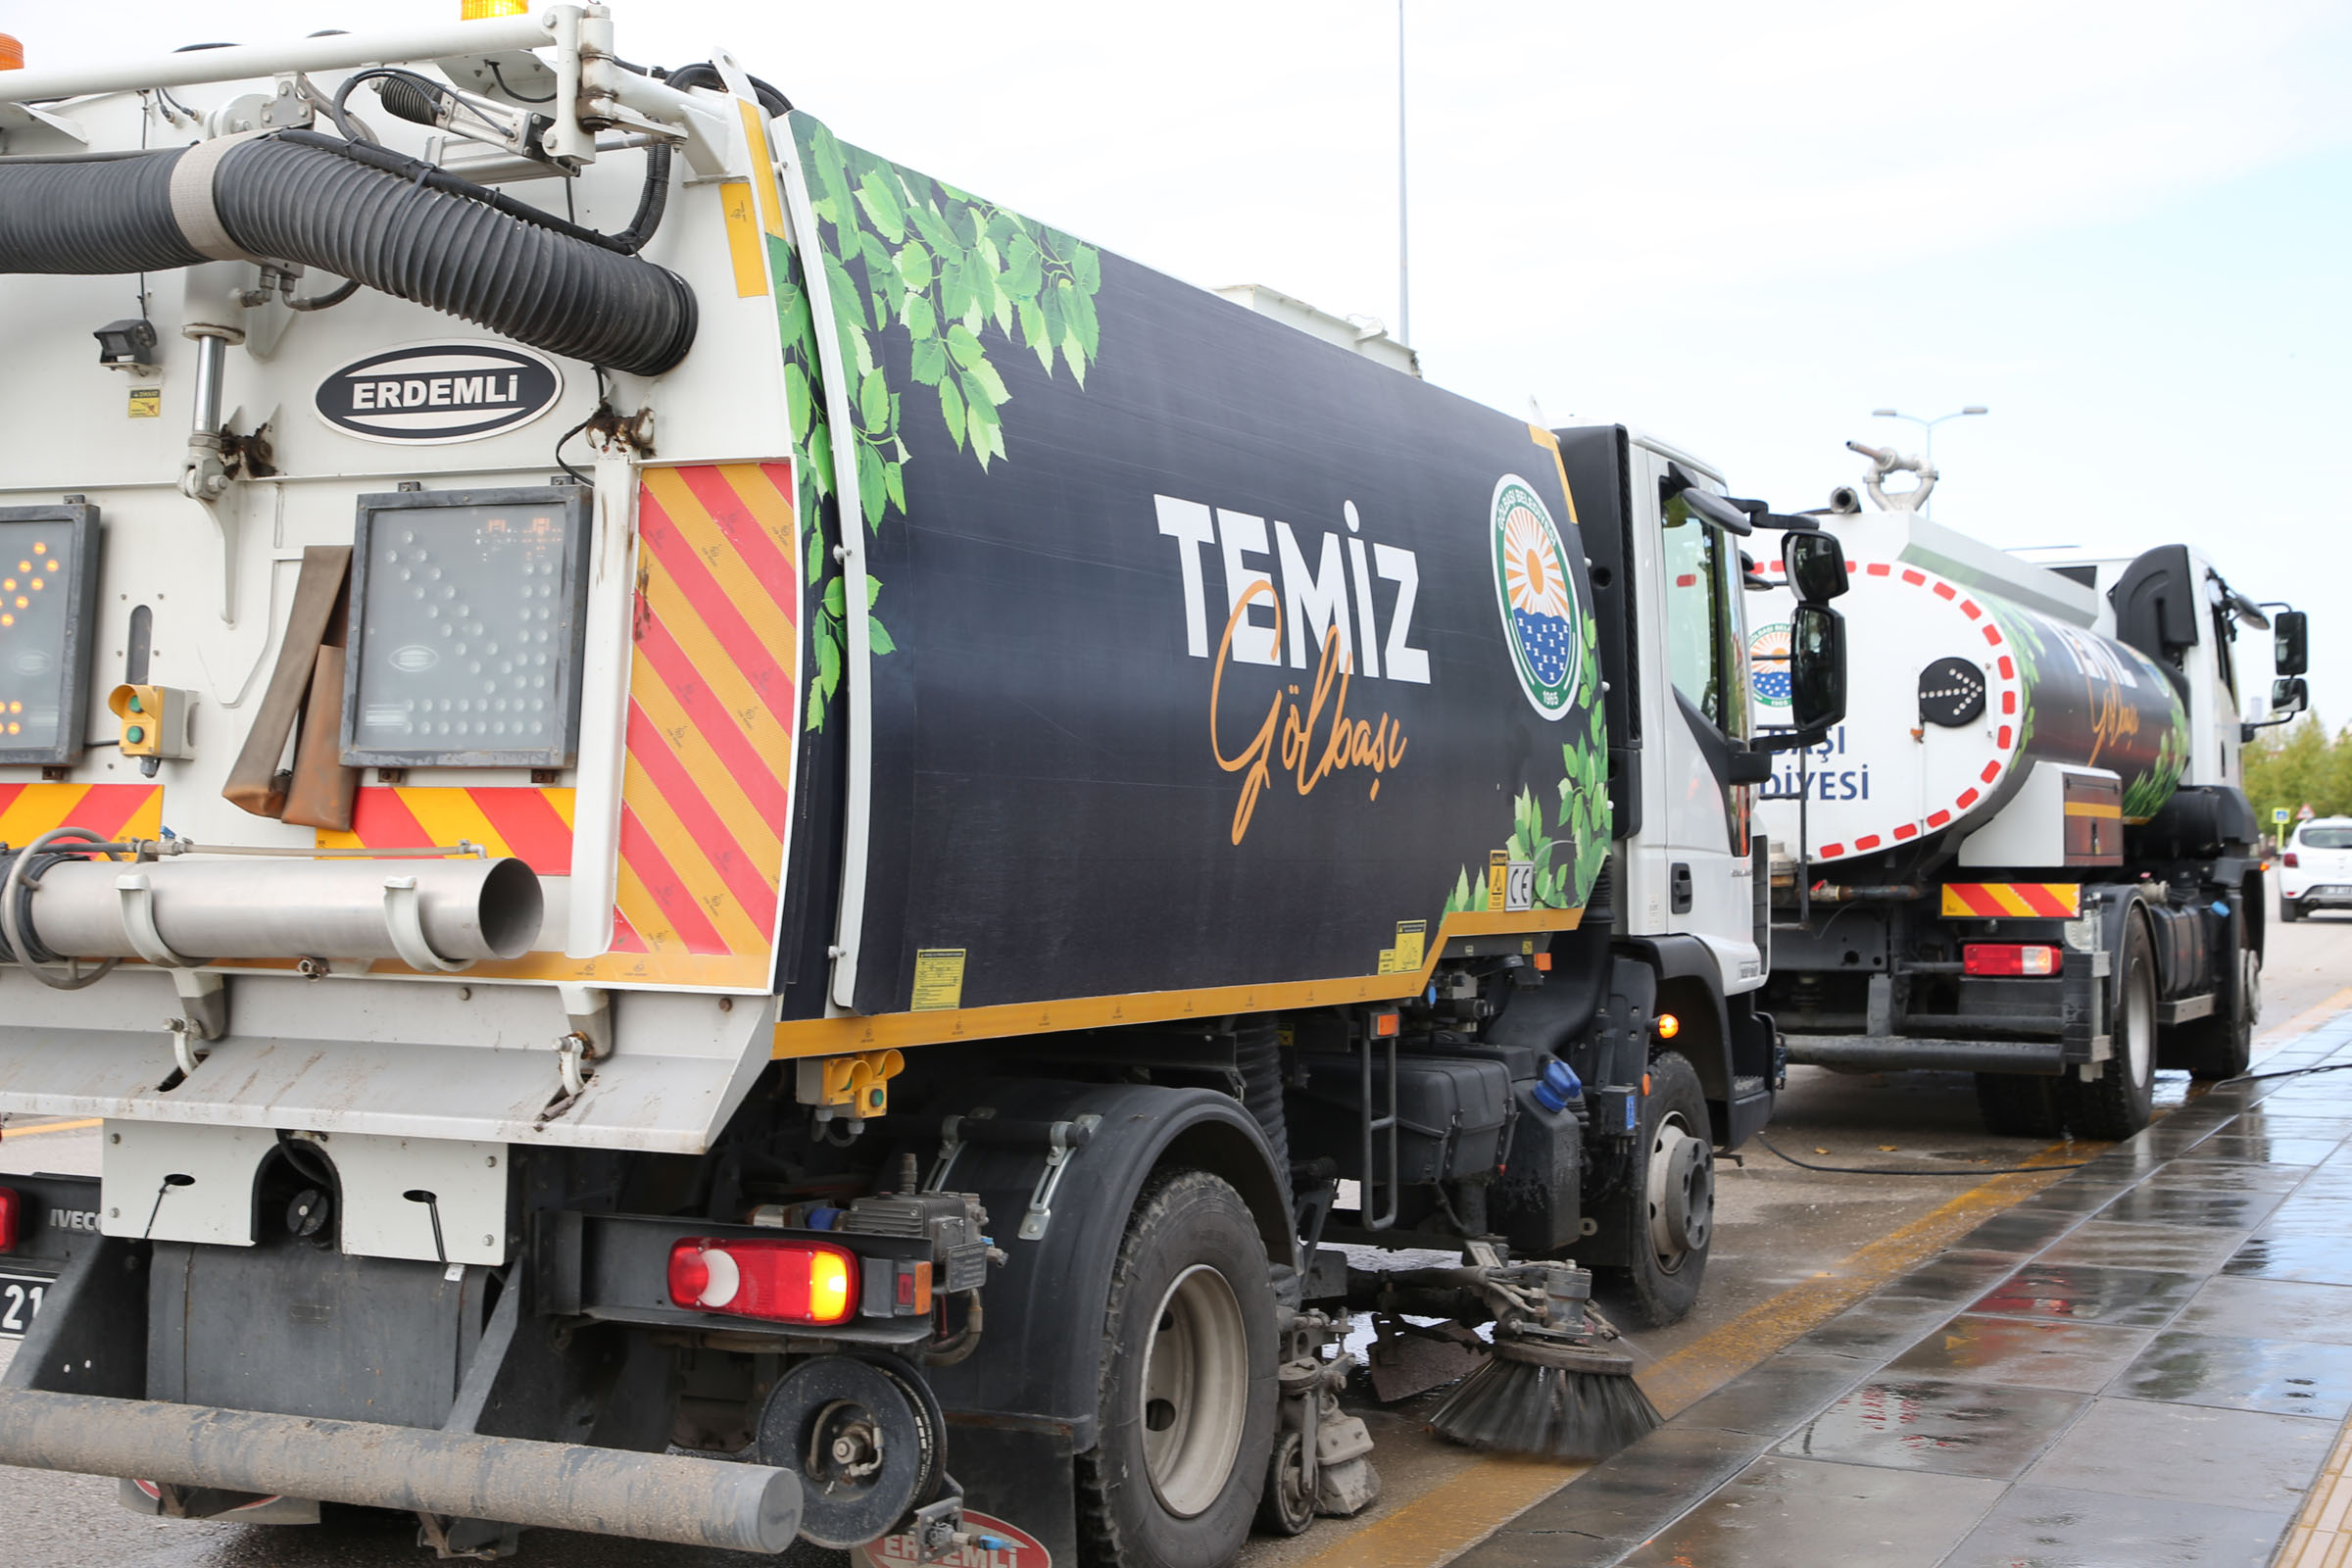 Ankara Haber: Gölbaşı'nda Temizlik Operasyonu: Belediye Ekipleri Aralıksız Çalışıyor!